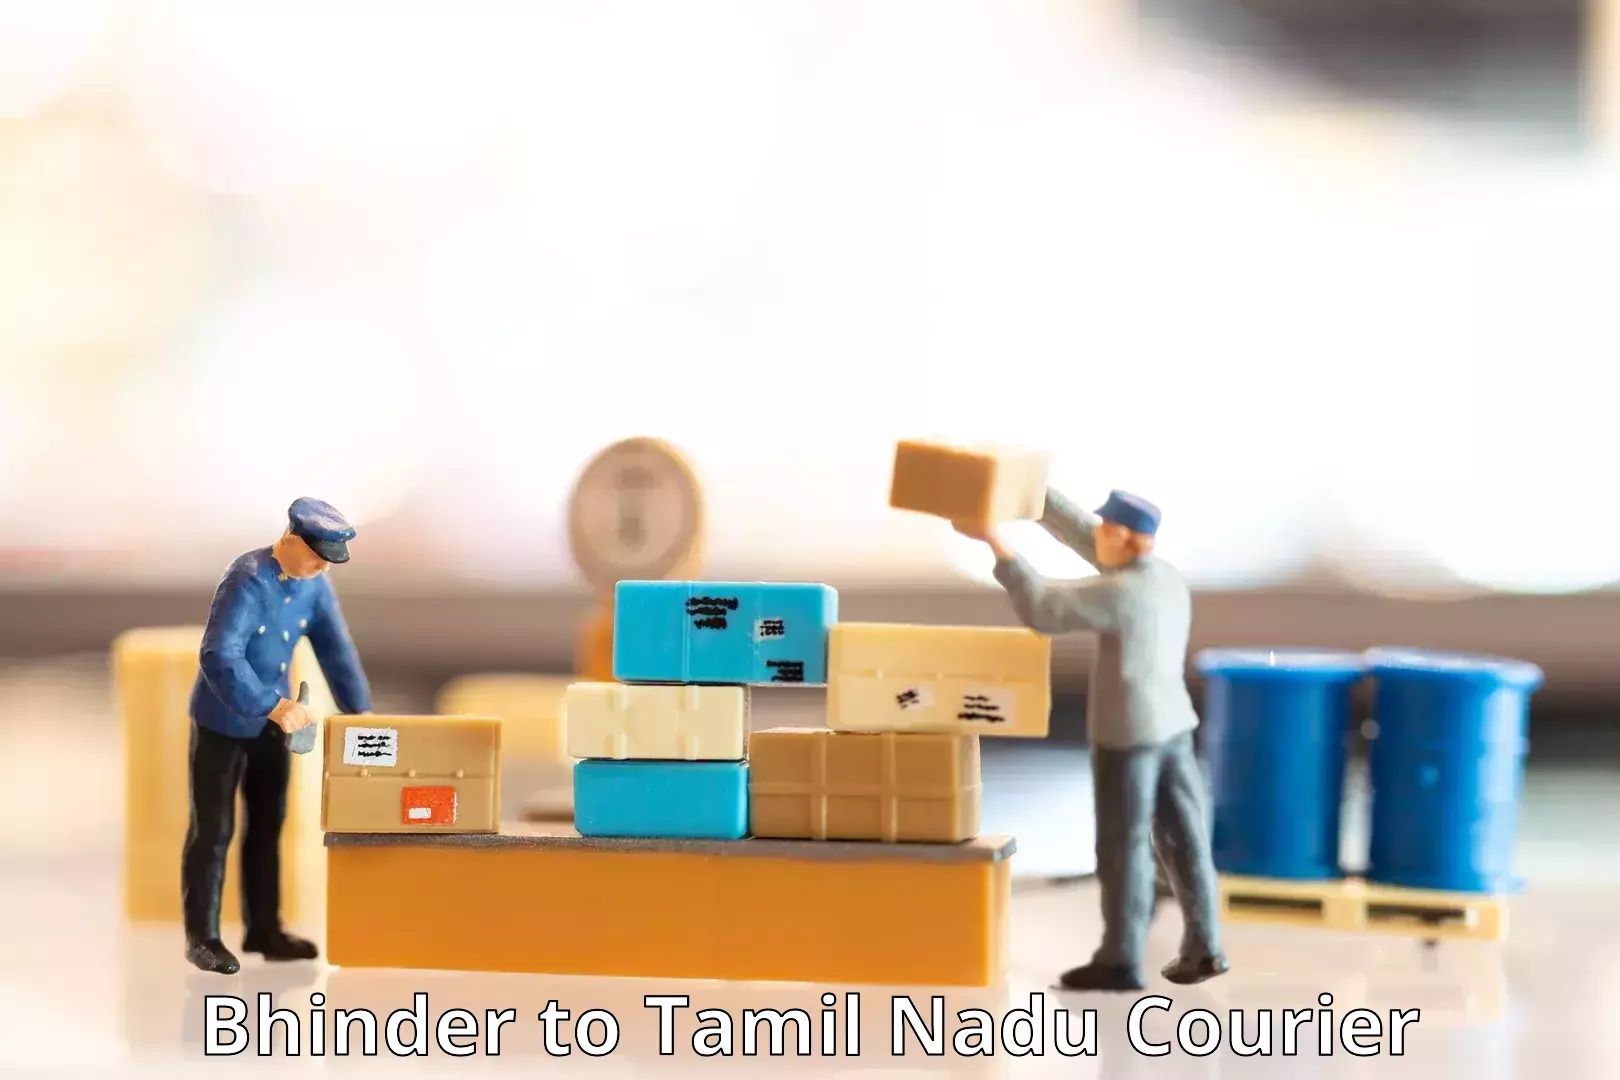 Global courier networks Bhinder to Thiruvadanai